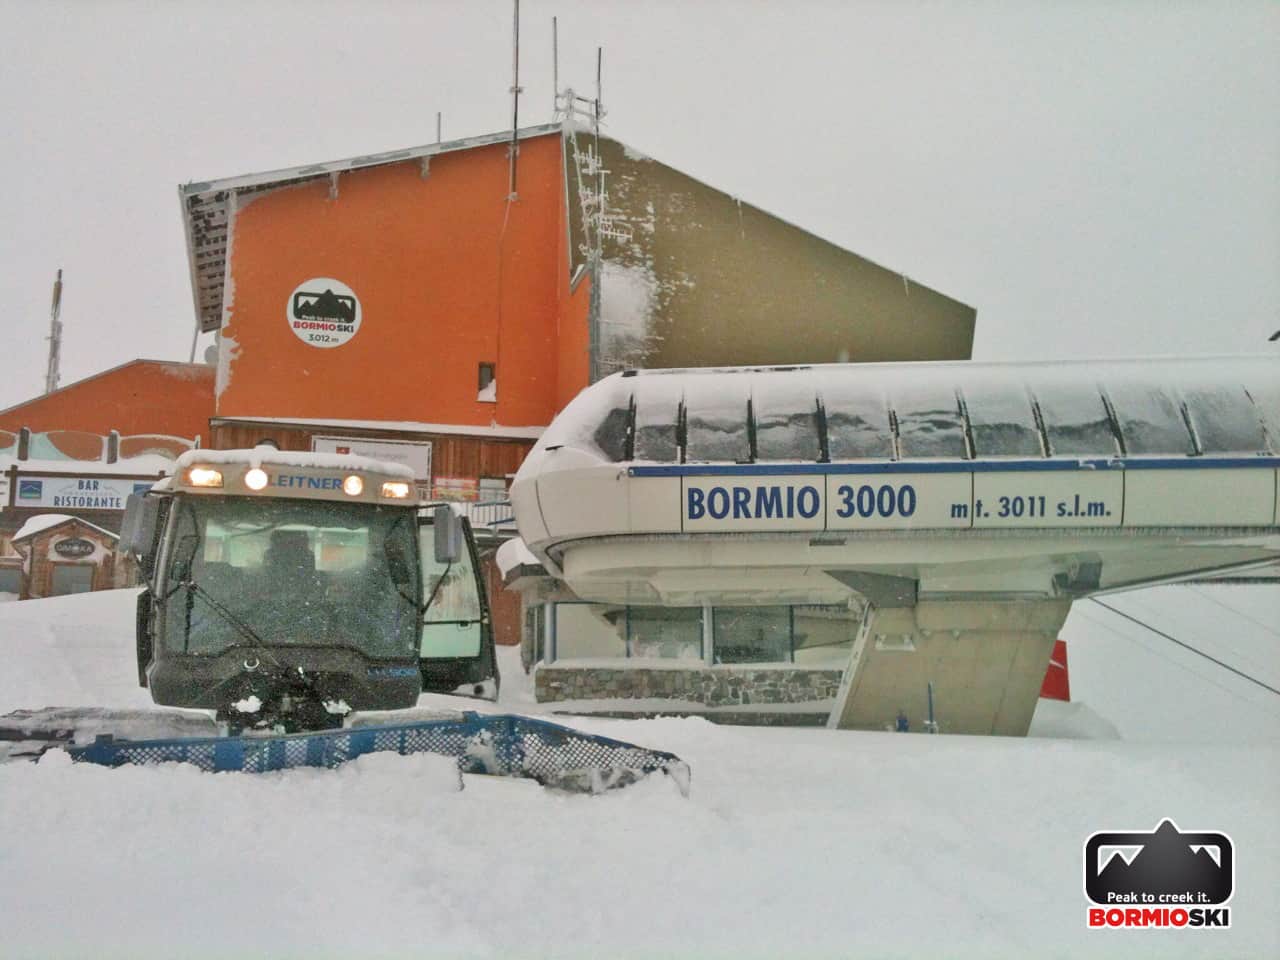 Bormio 3000 - 6 novembre 2014. )0 cm di neve fresca